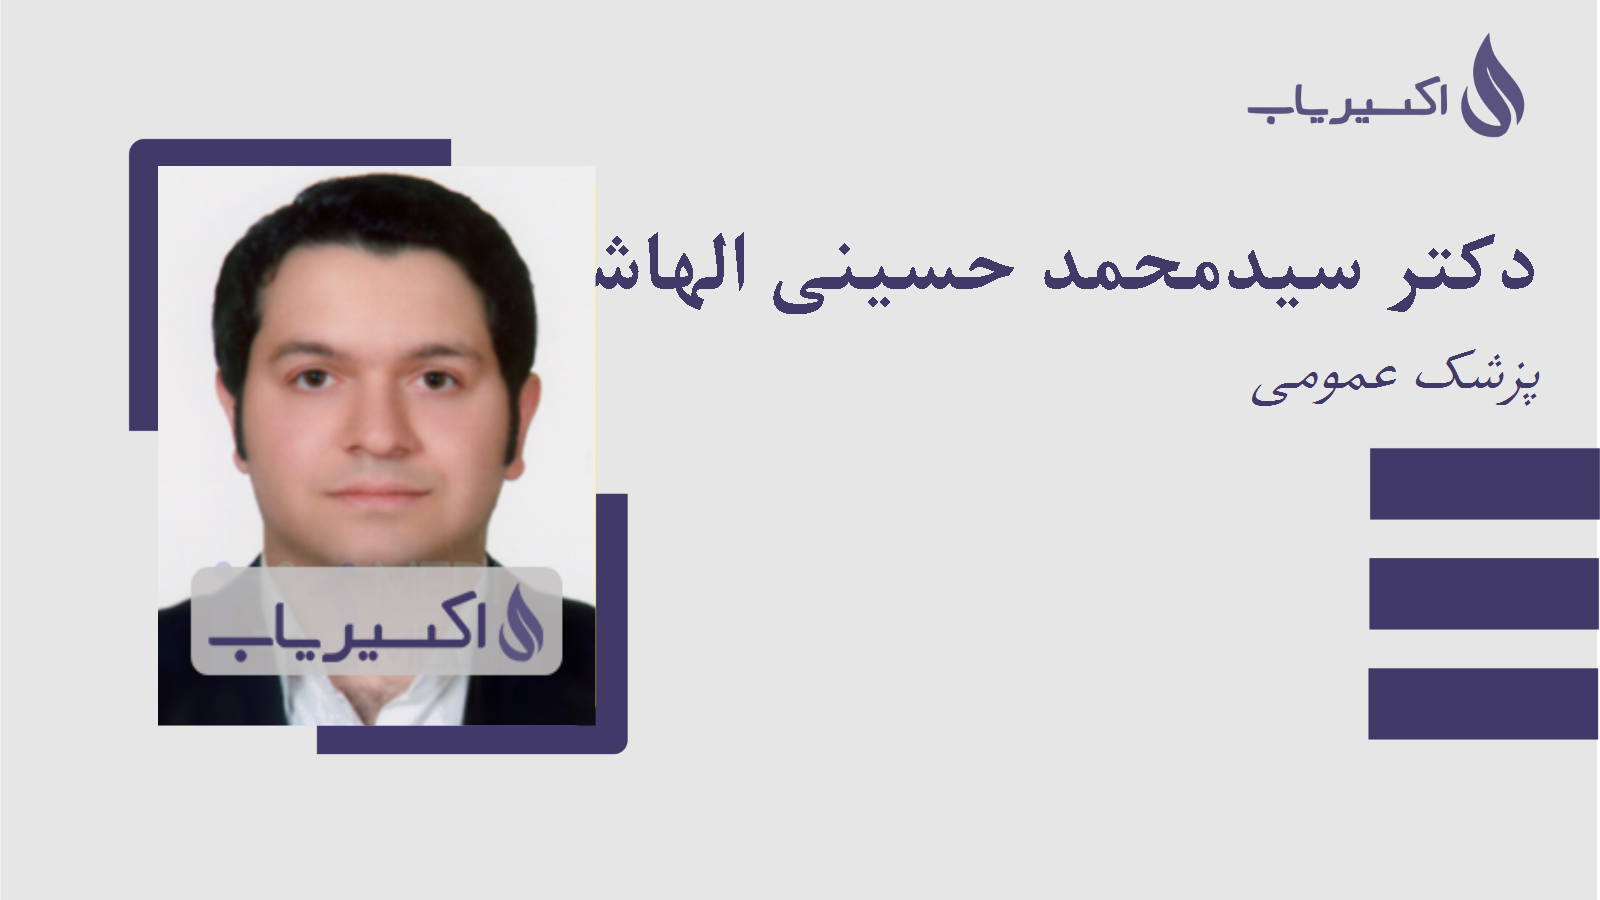 مطب دکتر سیدمحمد حسینی الهاشمی